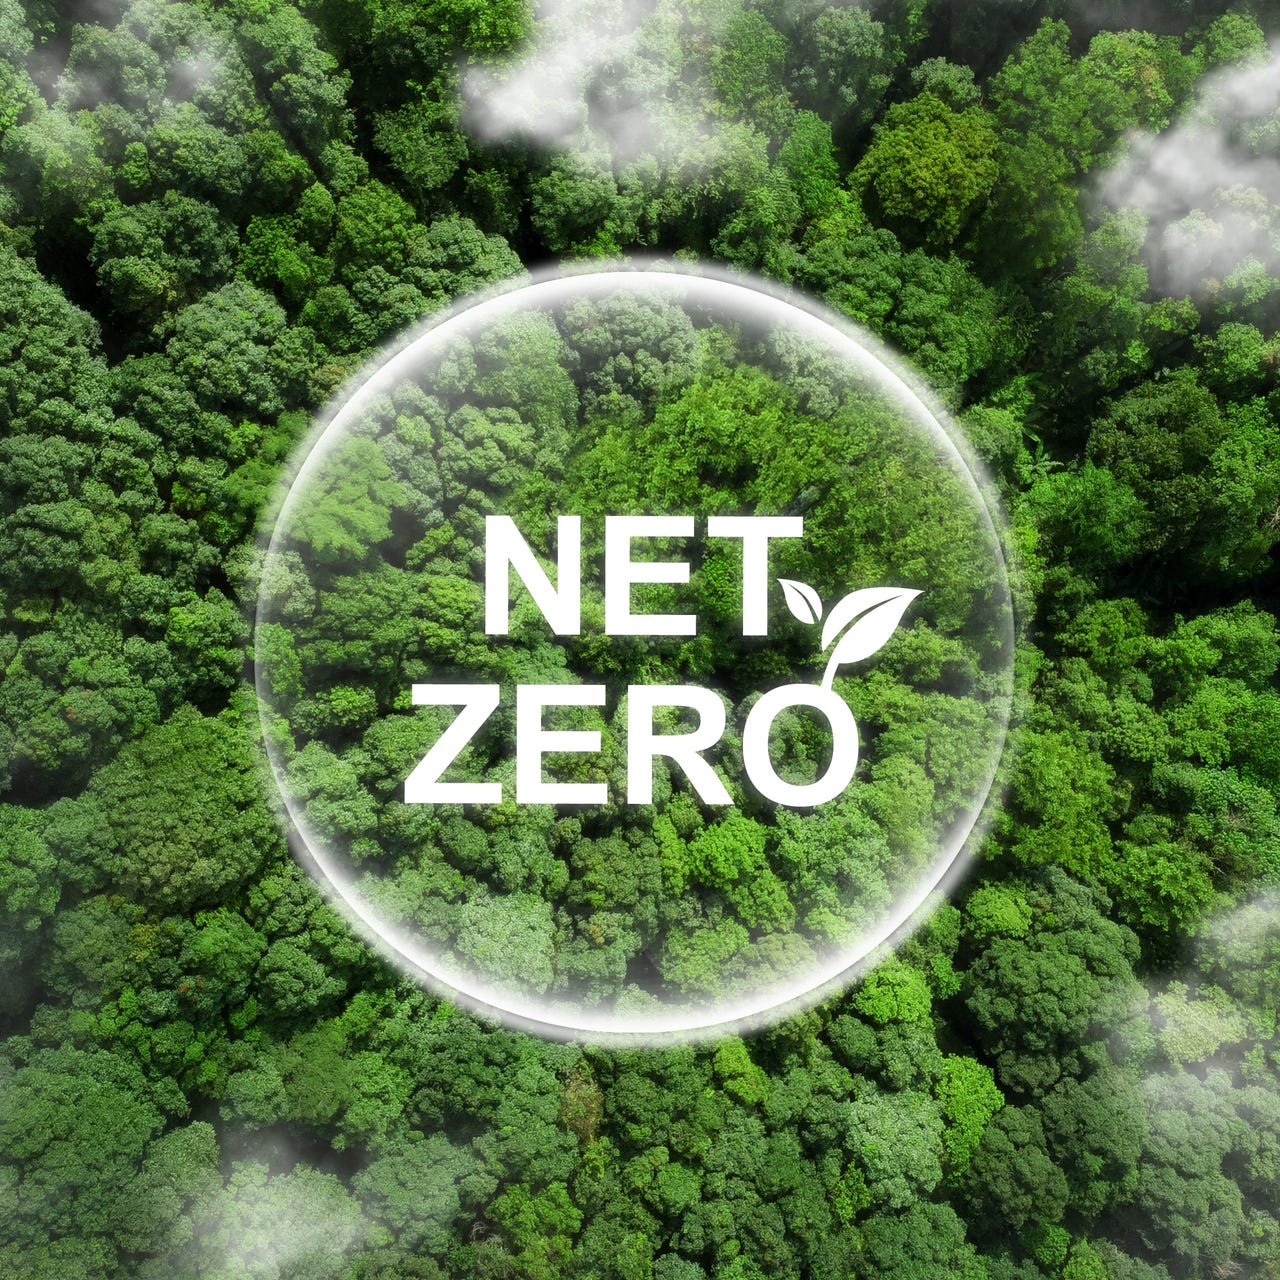 Net Zero by 2050